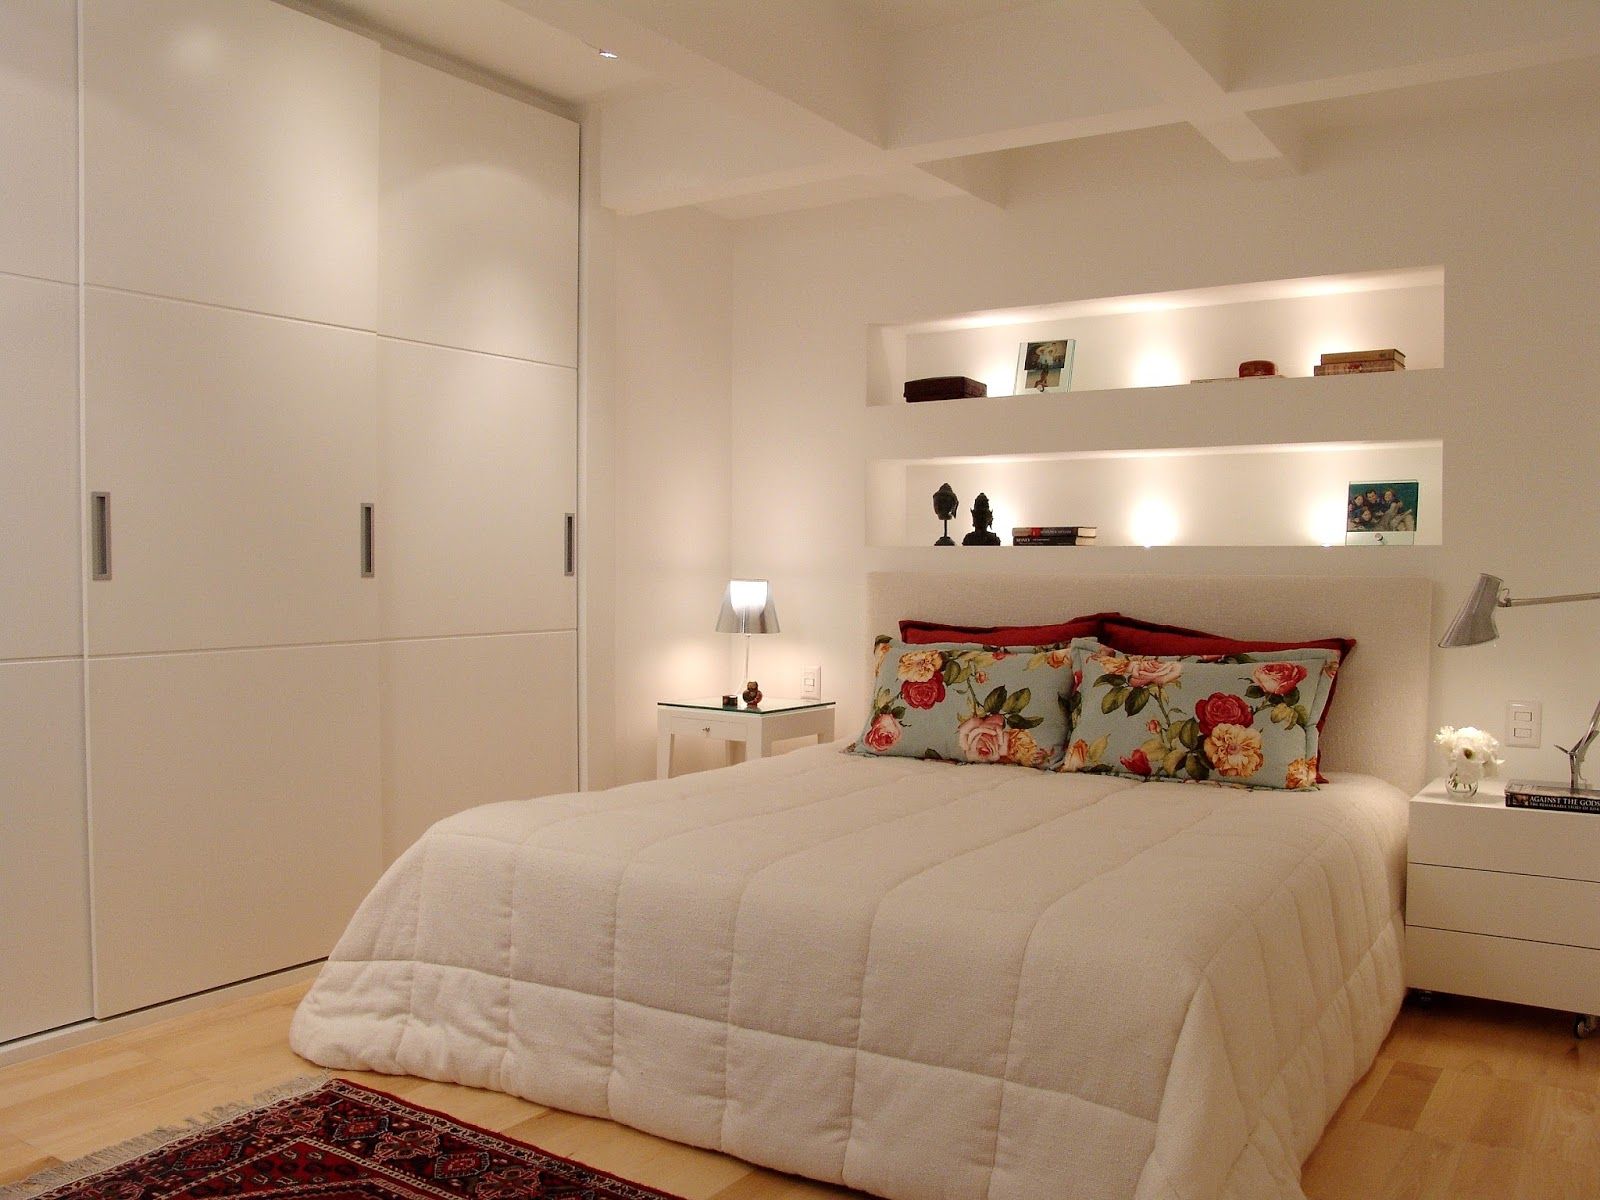 Chambre double blanche avec des détails colorés.